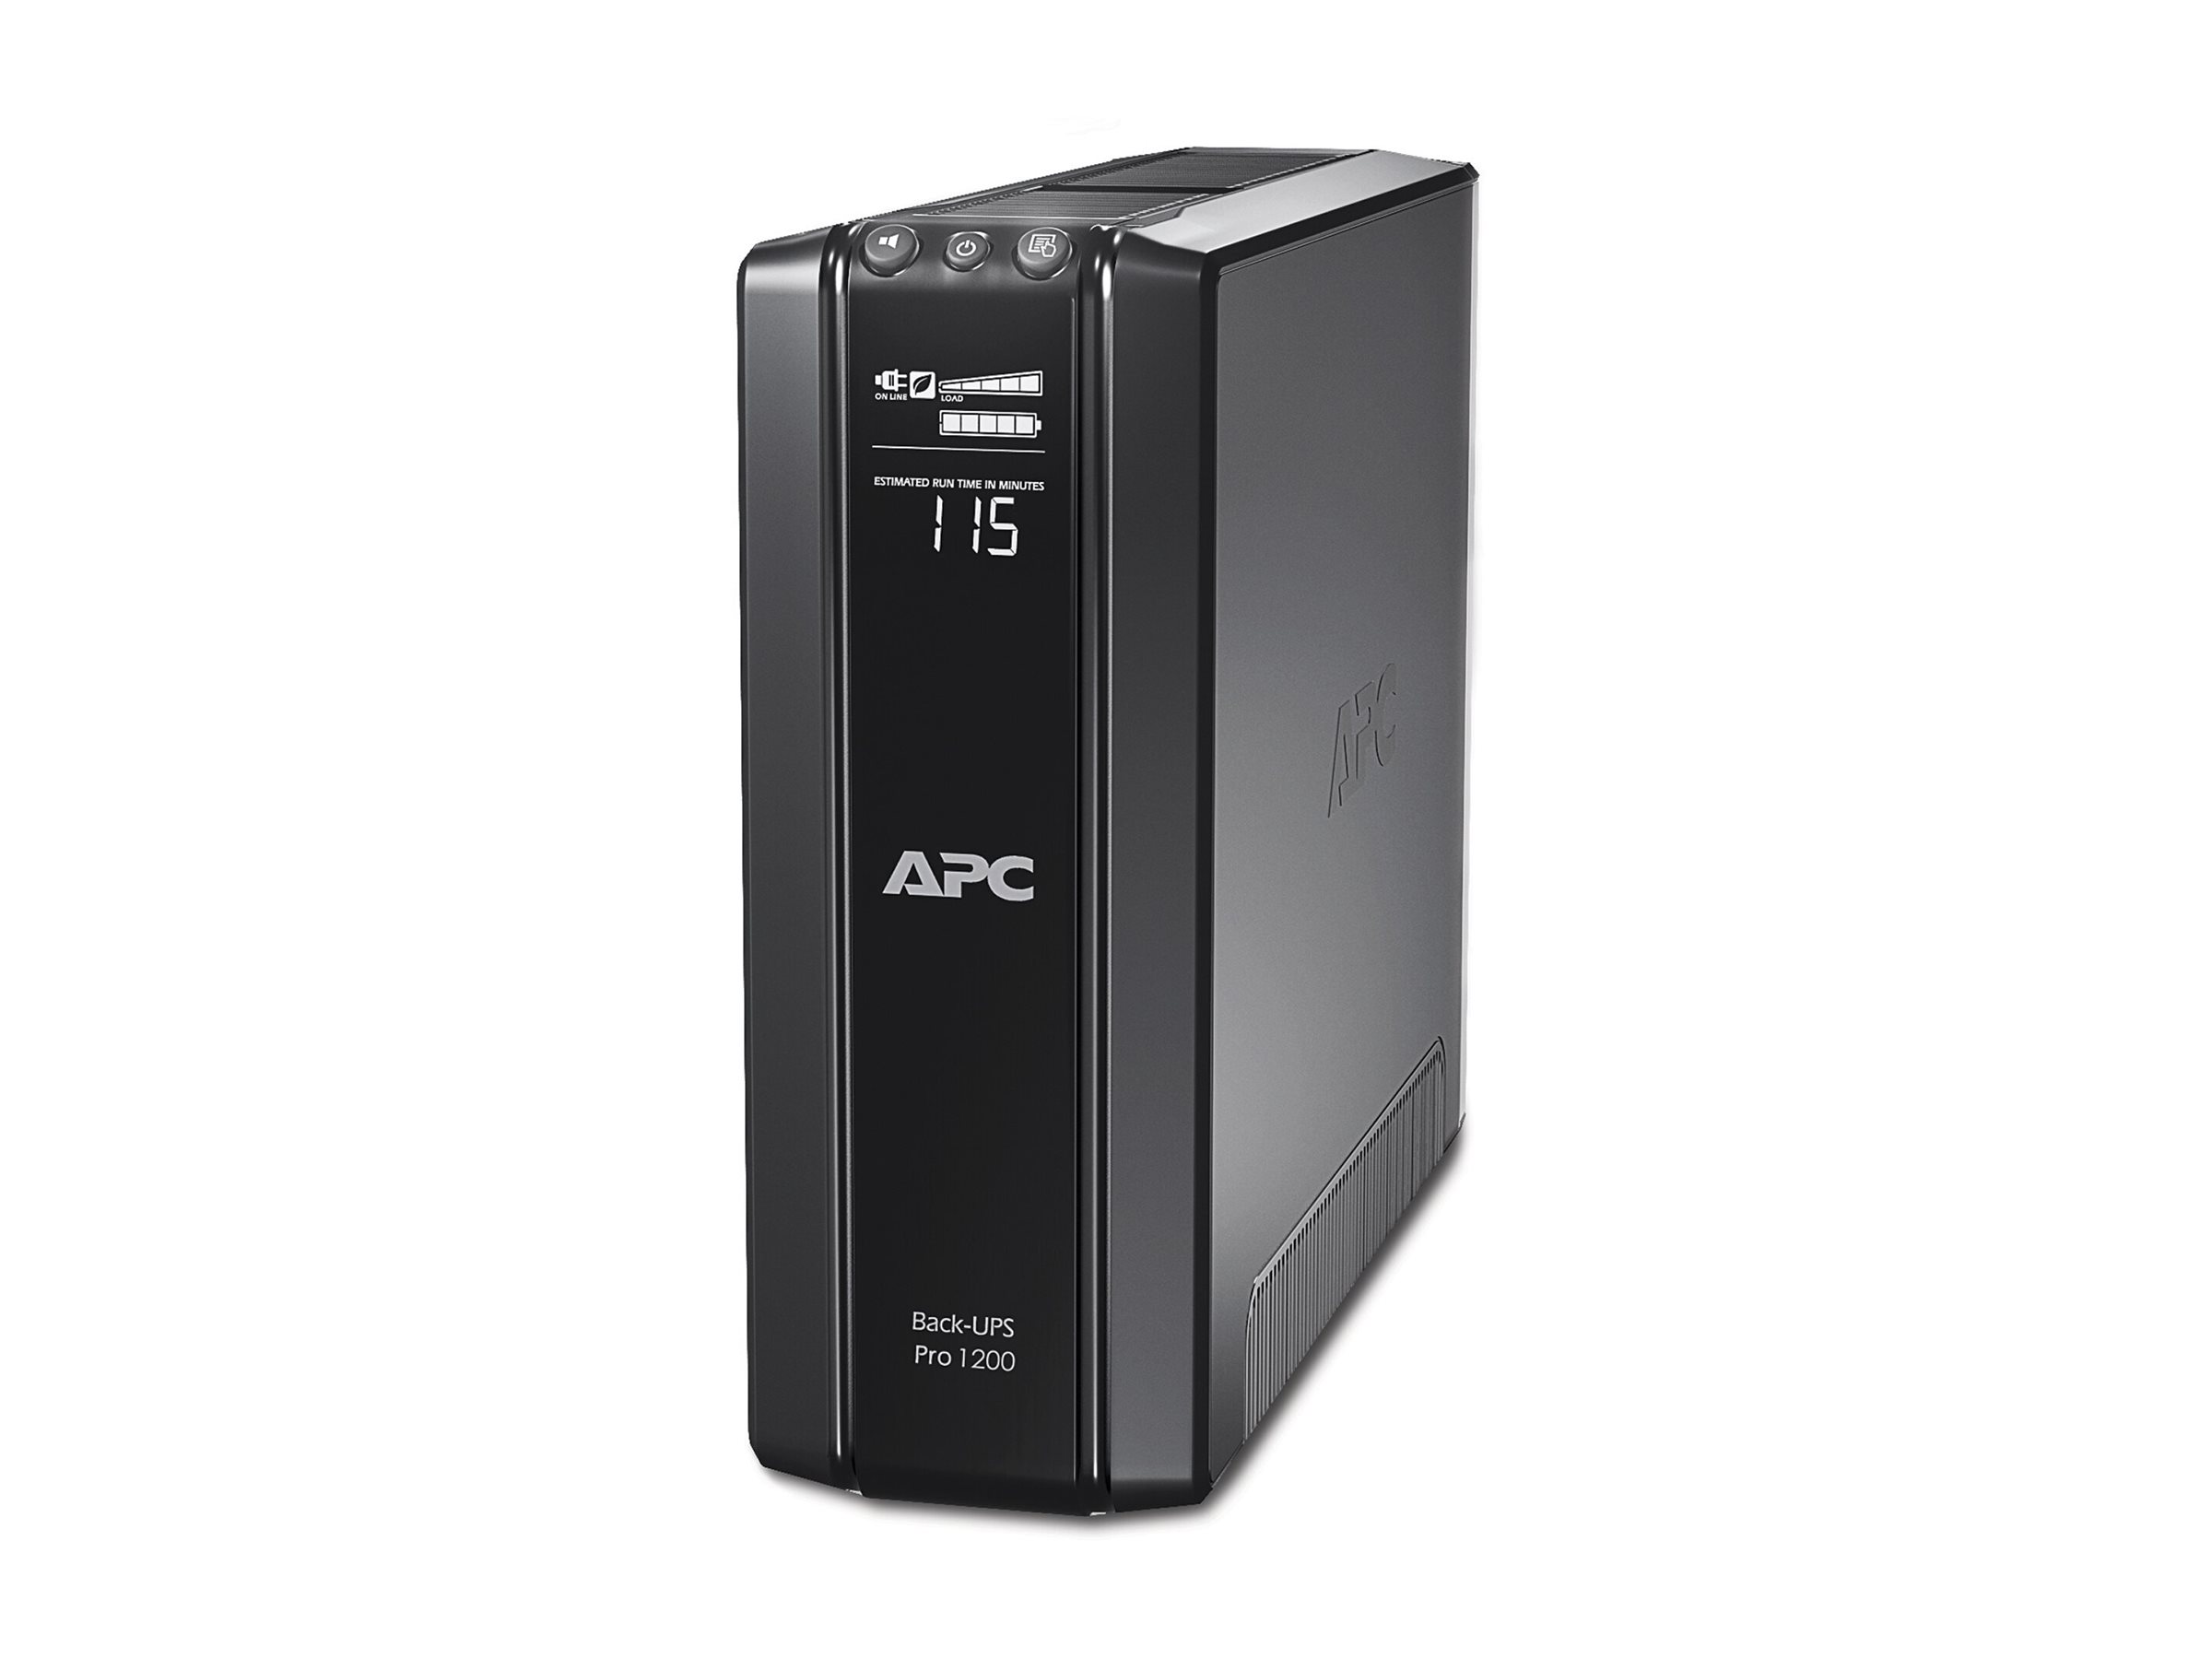 APC Back-UPS Pro 1200 - USV - Wechselstrom 230 V - 720 Watt - 1200 VA - USB